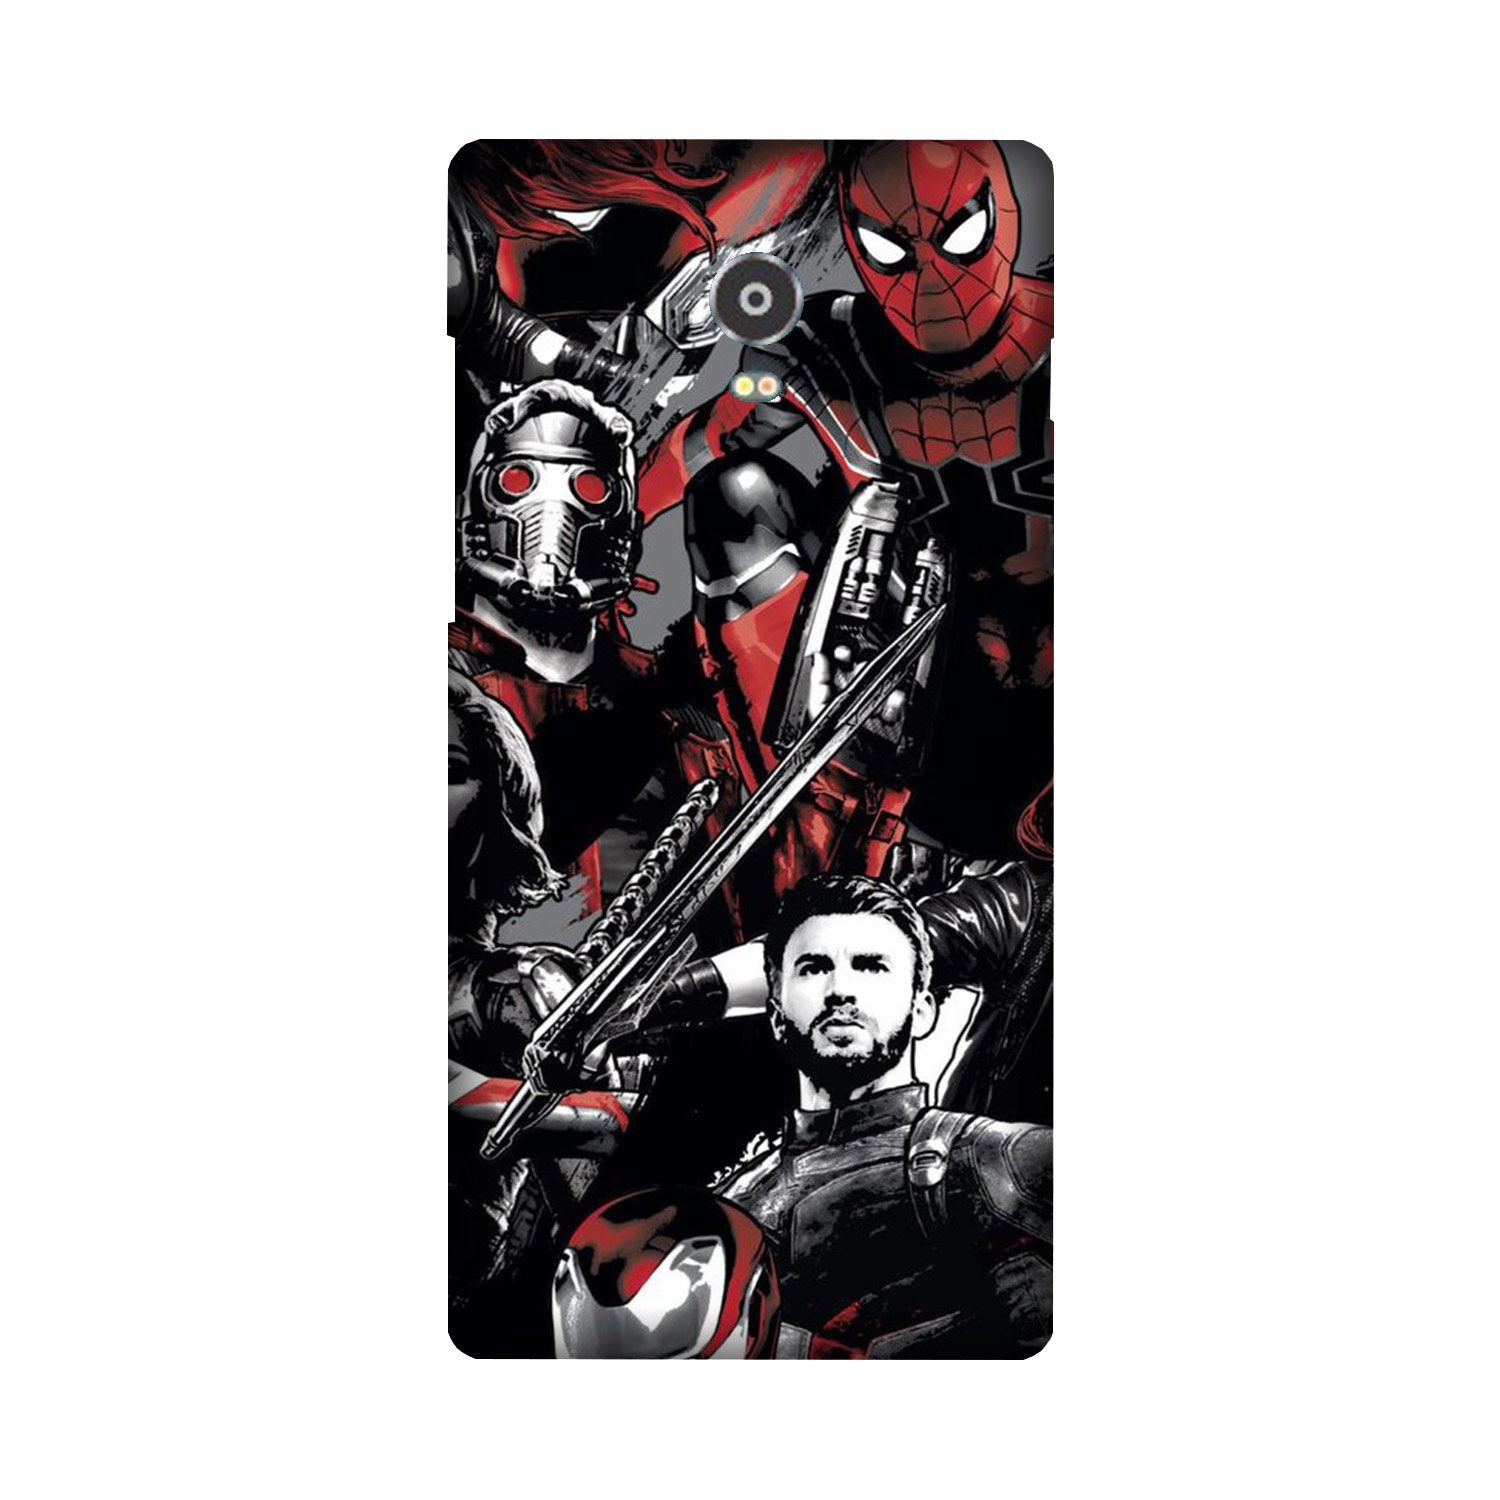 Avengers Case for Lenovo Vibe P1 (Design - 190)